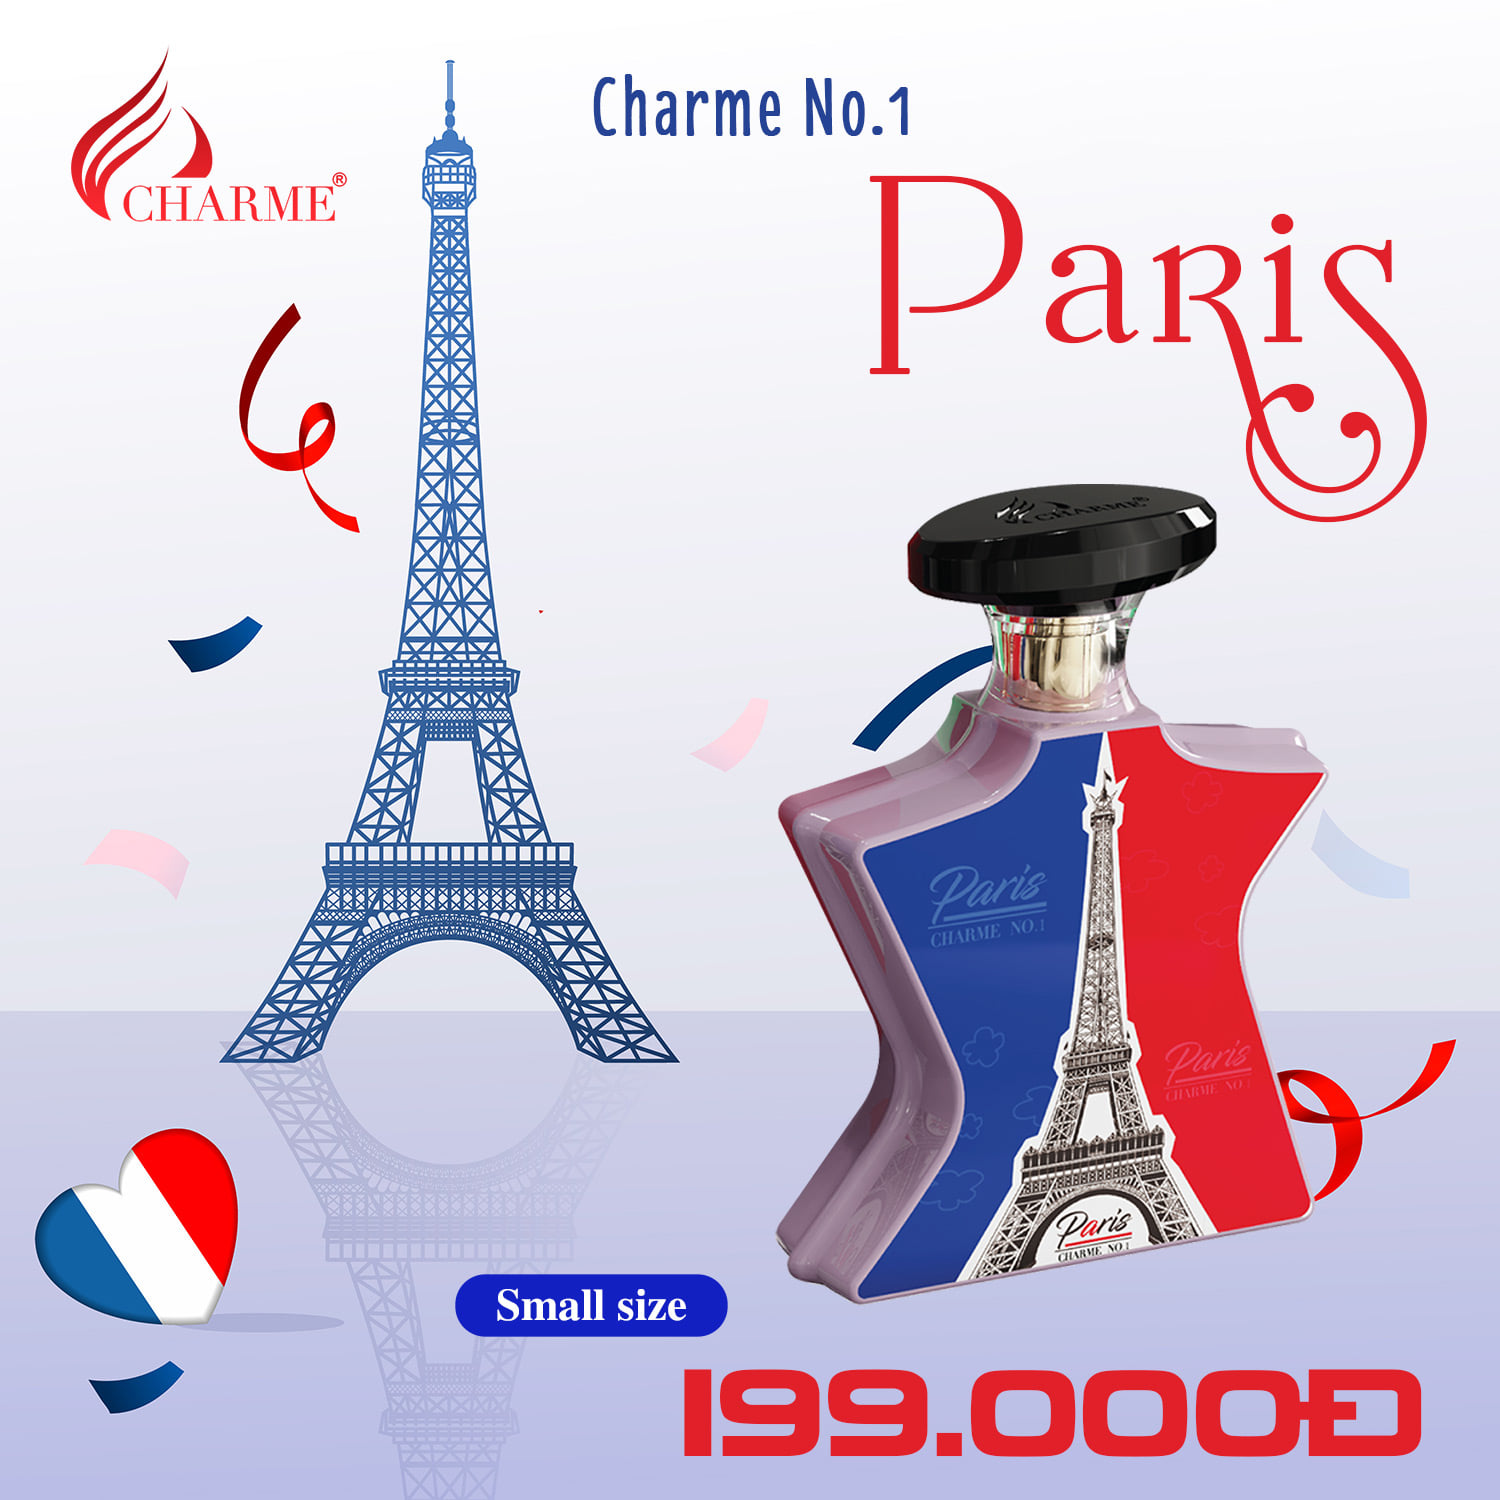 Nước hoa mini 10ml Paris No.1 Charme chính hãng - 8936194691323